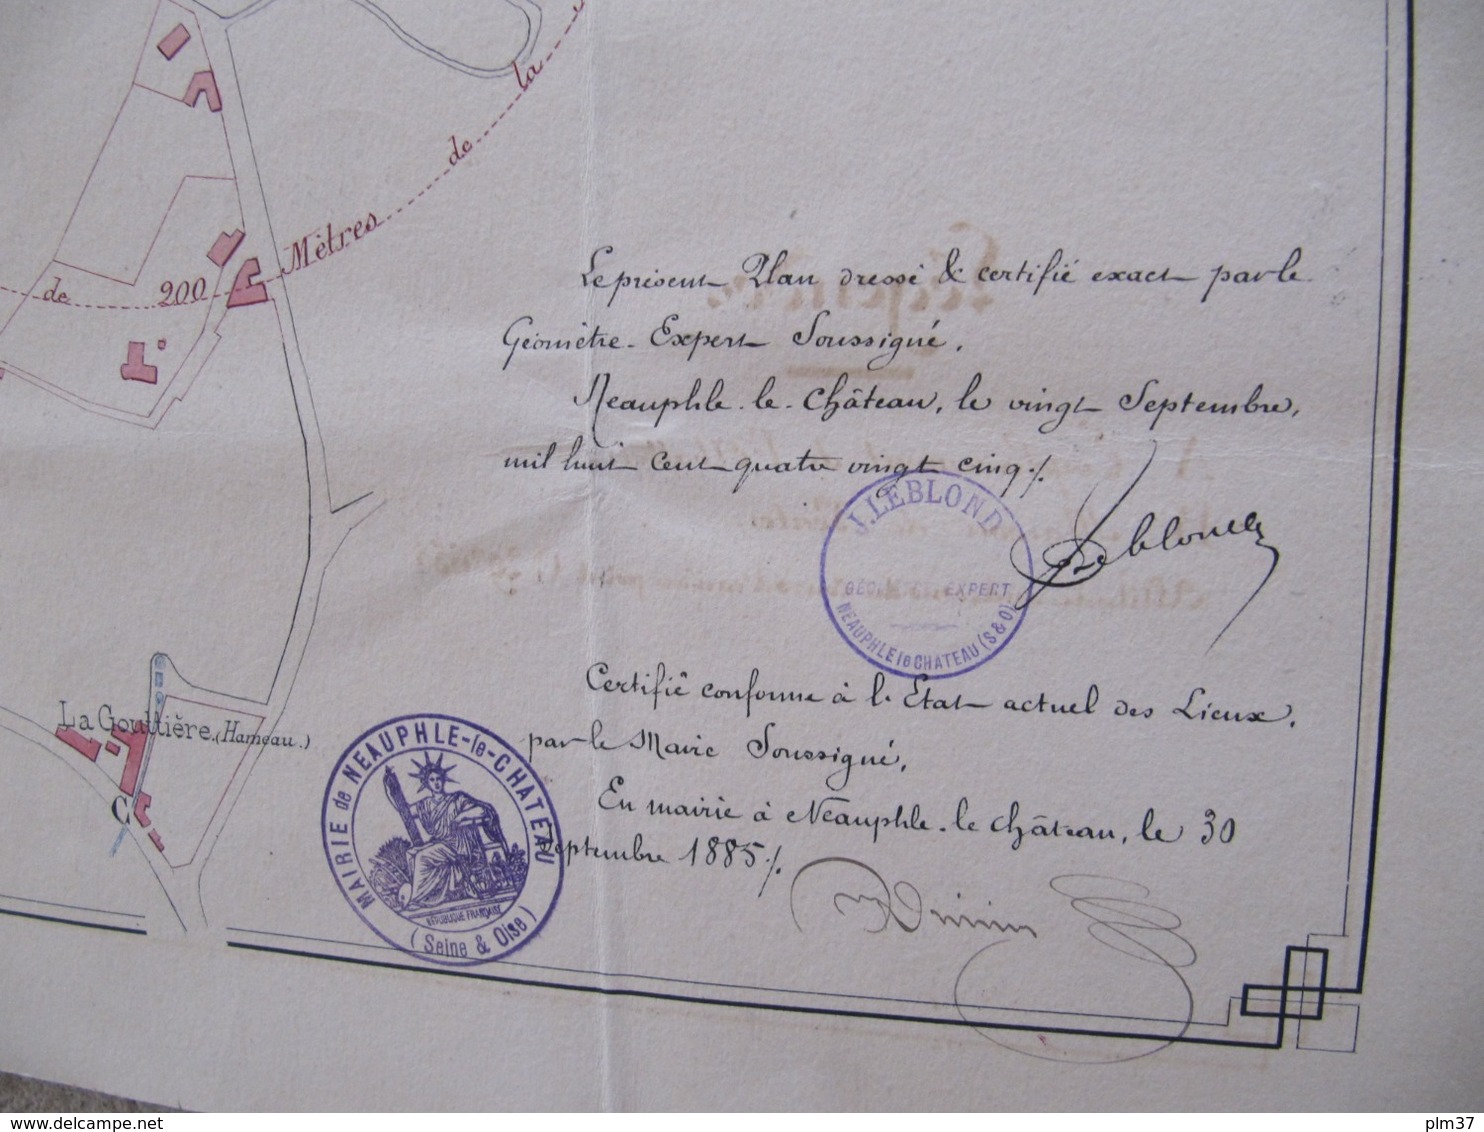 NEAUPHLE LE CHATEAU, 78 - Abattoir De Mr Villatte, Charcutier - 2 Documents Dressés Par Géomètre, 1885 - Architecture